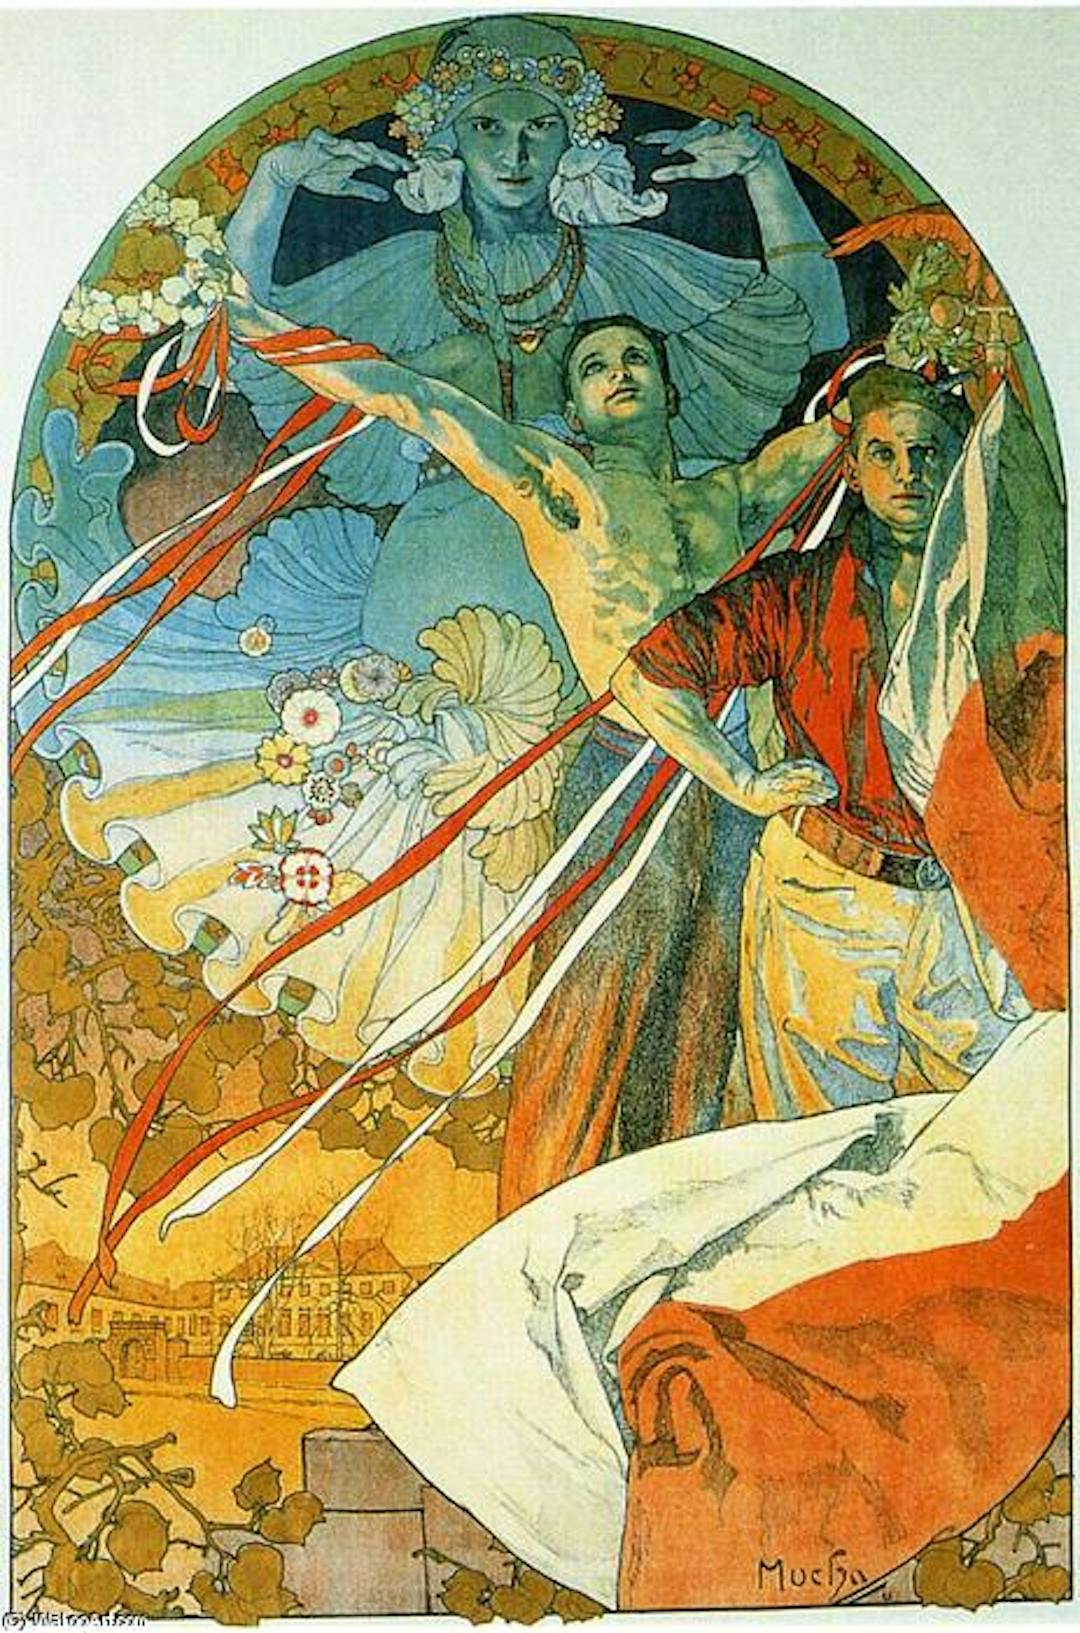 Cartaz para o 8º Festival Sokol de Alfons Mucha, um dos principais criadores do movimento Art Nouveau. Disponível em https://wikioo.org/.